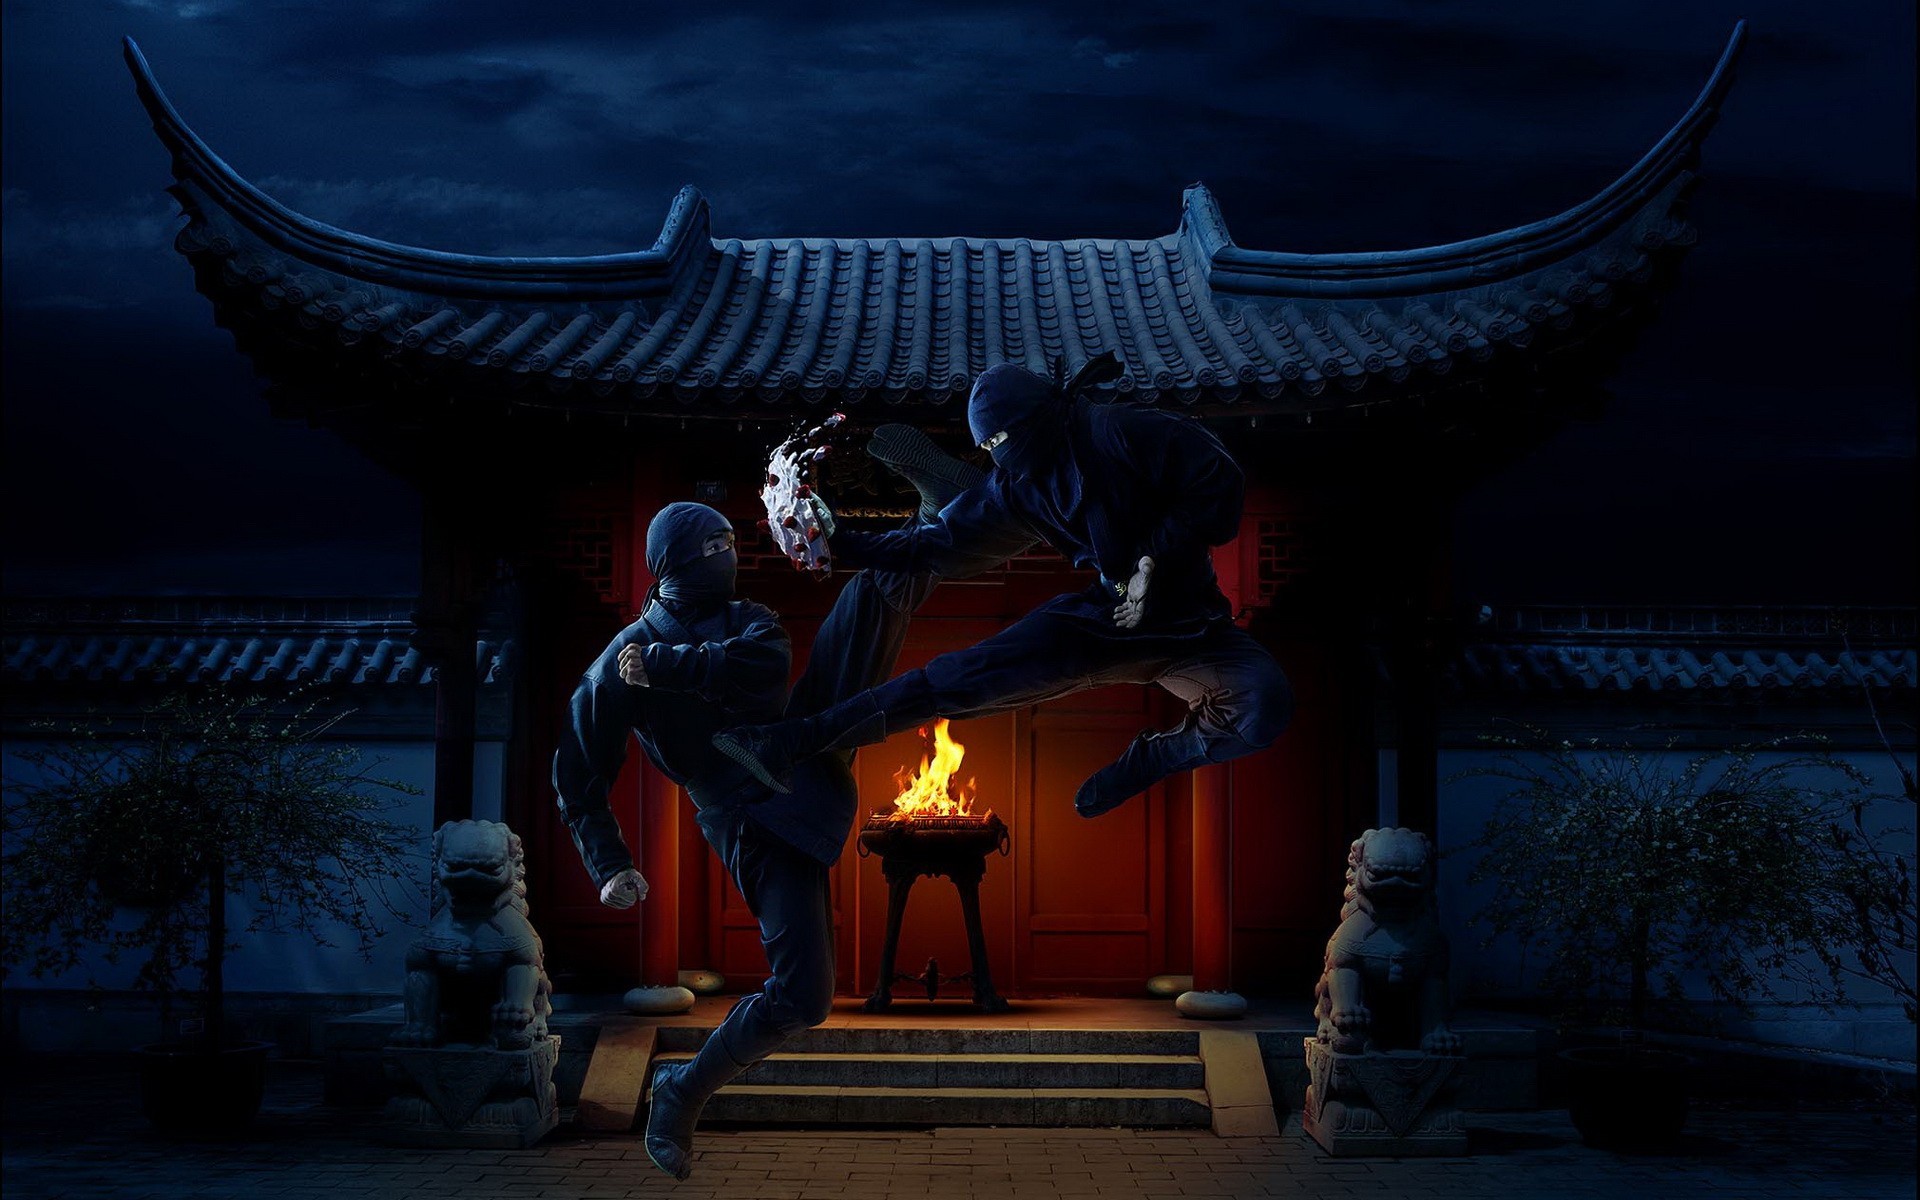 General 1920x1200 ninjas warrior fantasy art night sky fighting Asia artwork digital art